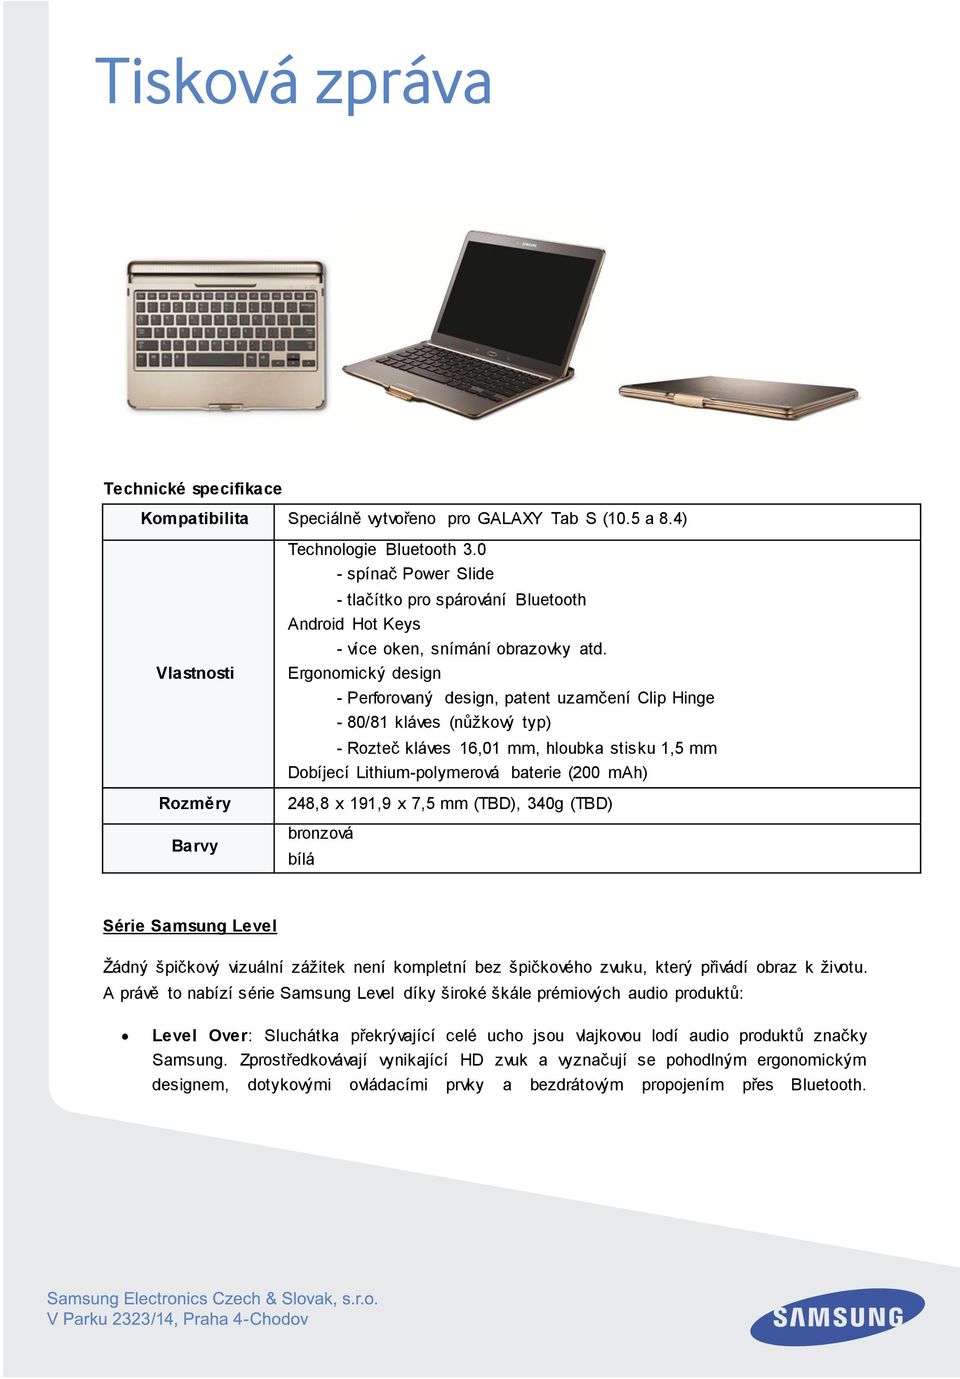 Ergonomický design - Perforovaný design, patent uzamčení Clip Hinge - 80/81 kláves (nůžkový typ) - Rozteč kláves 16,01 mm, hloubka stisku 1,5 mm Dobíjecí Lithium-polymerová baterie (200 mah) 248,8 x